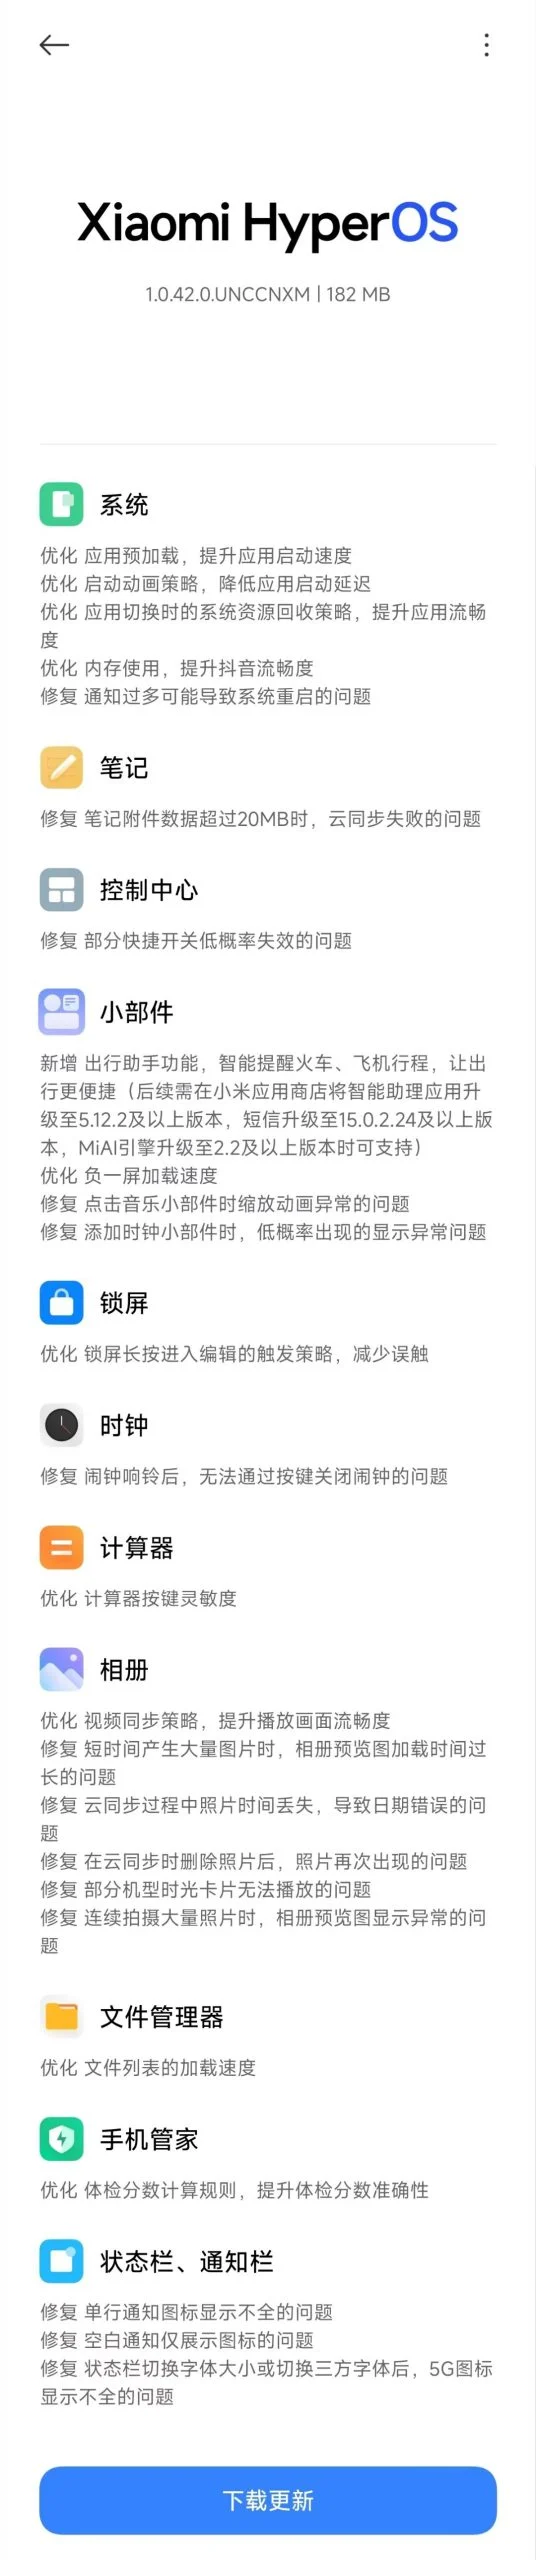 (Источник изображения: Xiaomi через Gizmochina)